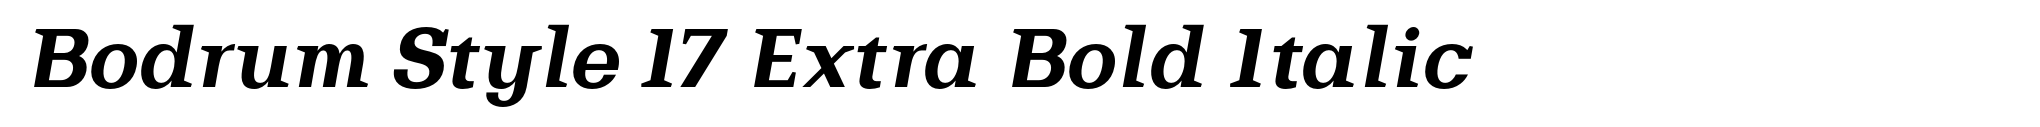 Bodrum Style 17 Extra Bold Italic image